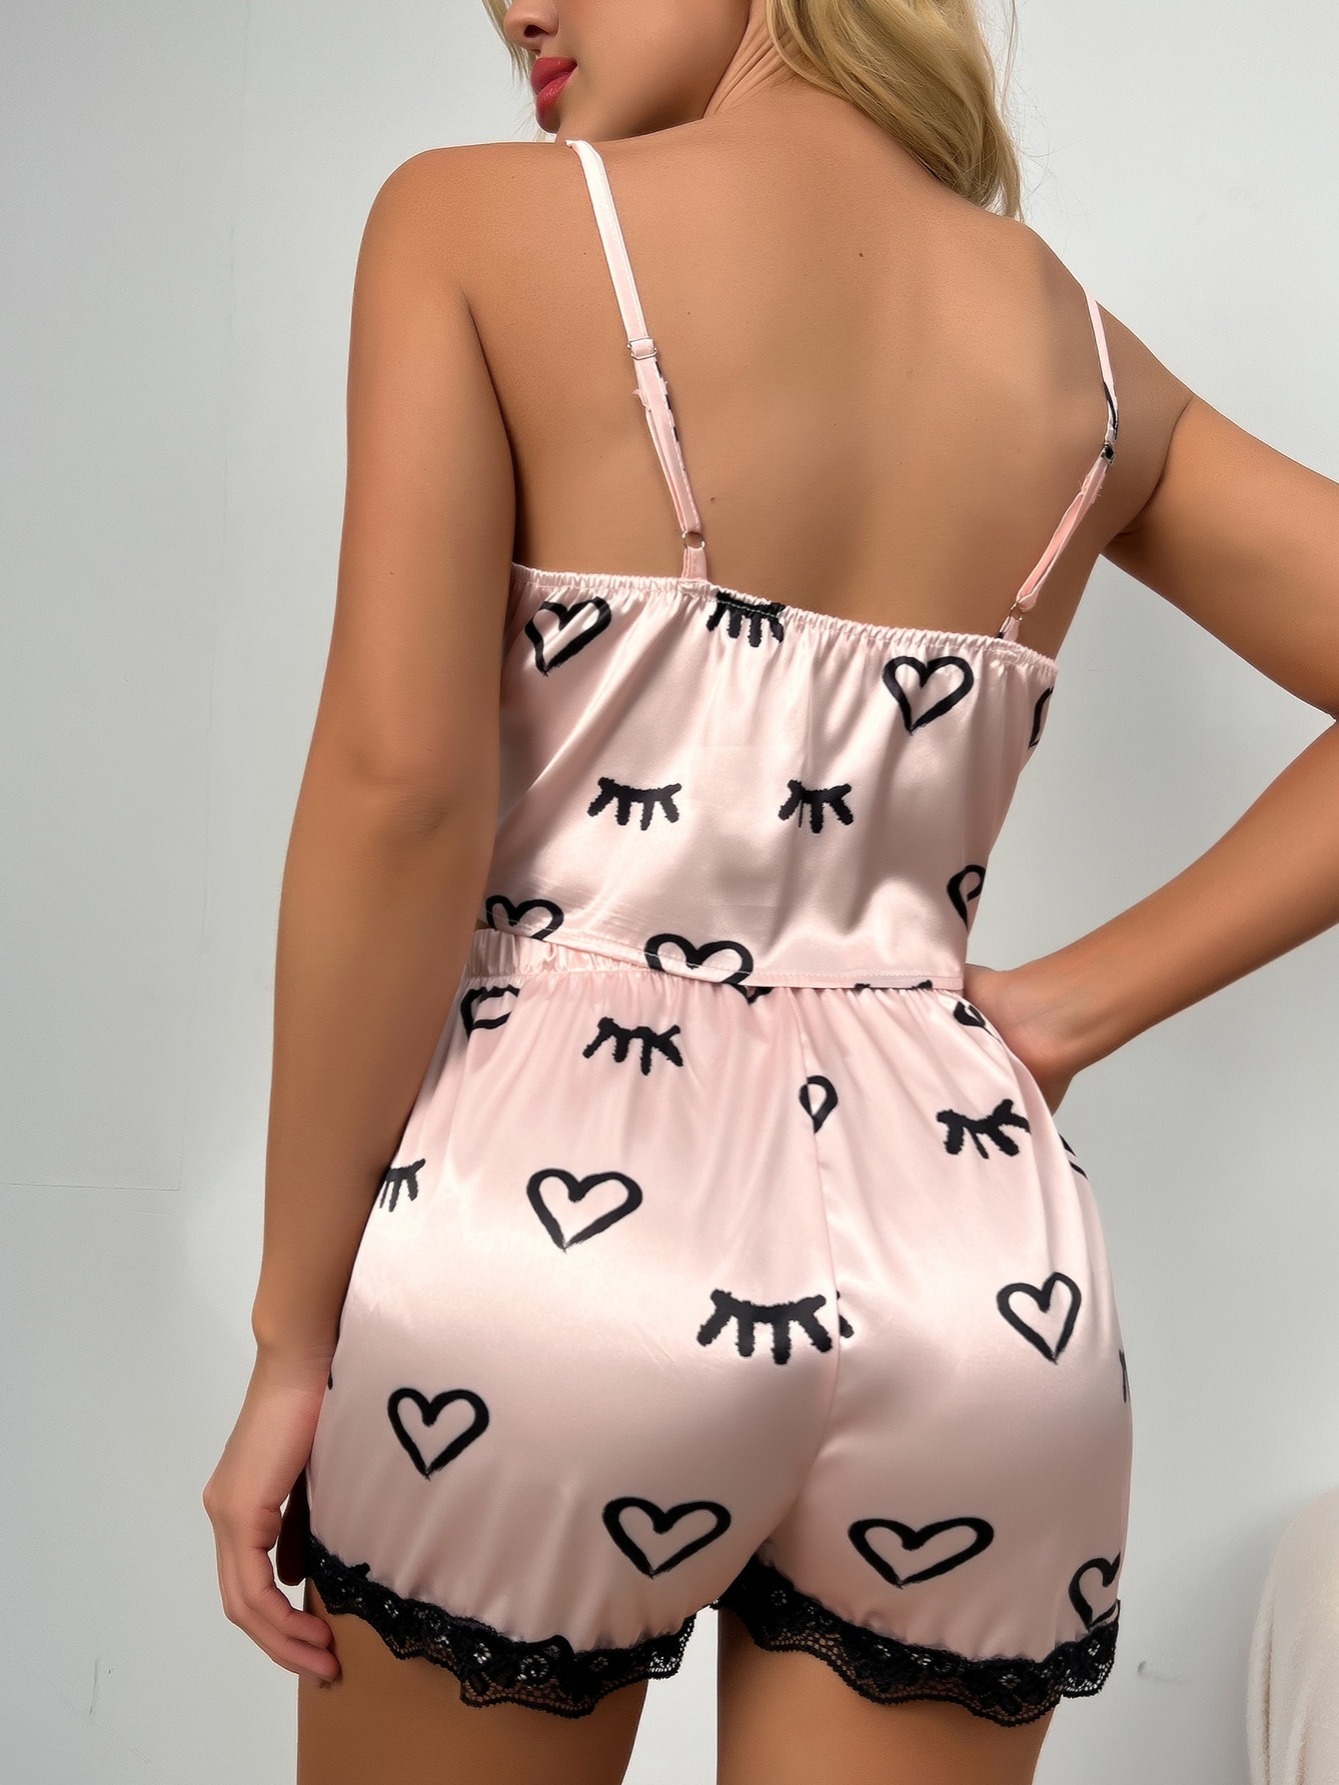 Lingerie For Women Naughty V-Neck Velvet Stain Camisole Pajamas Bowknot  Shorts Set 